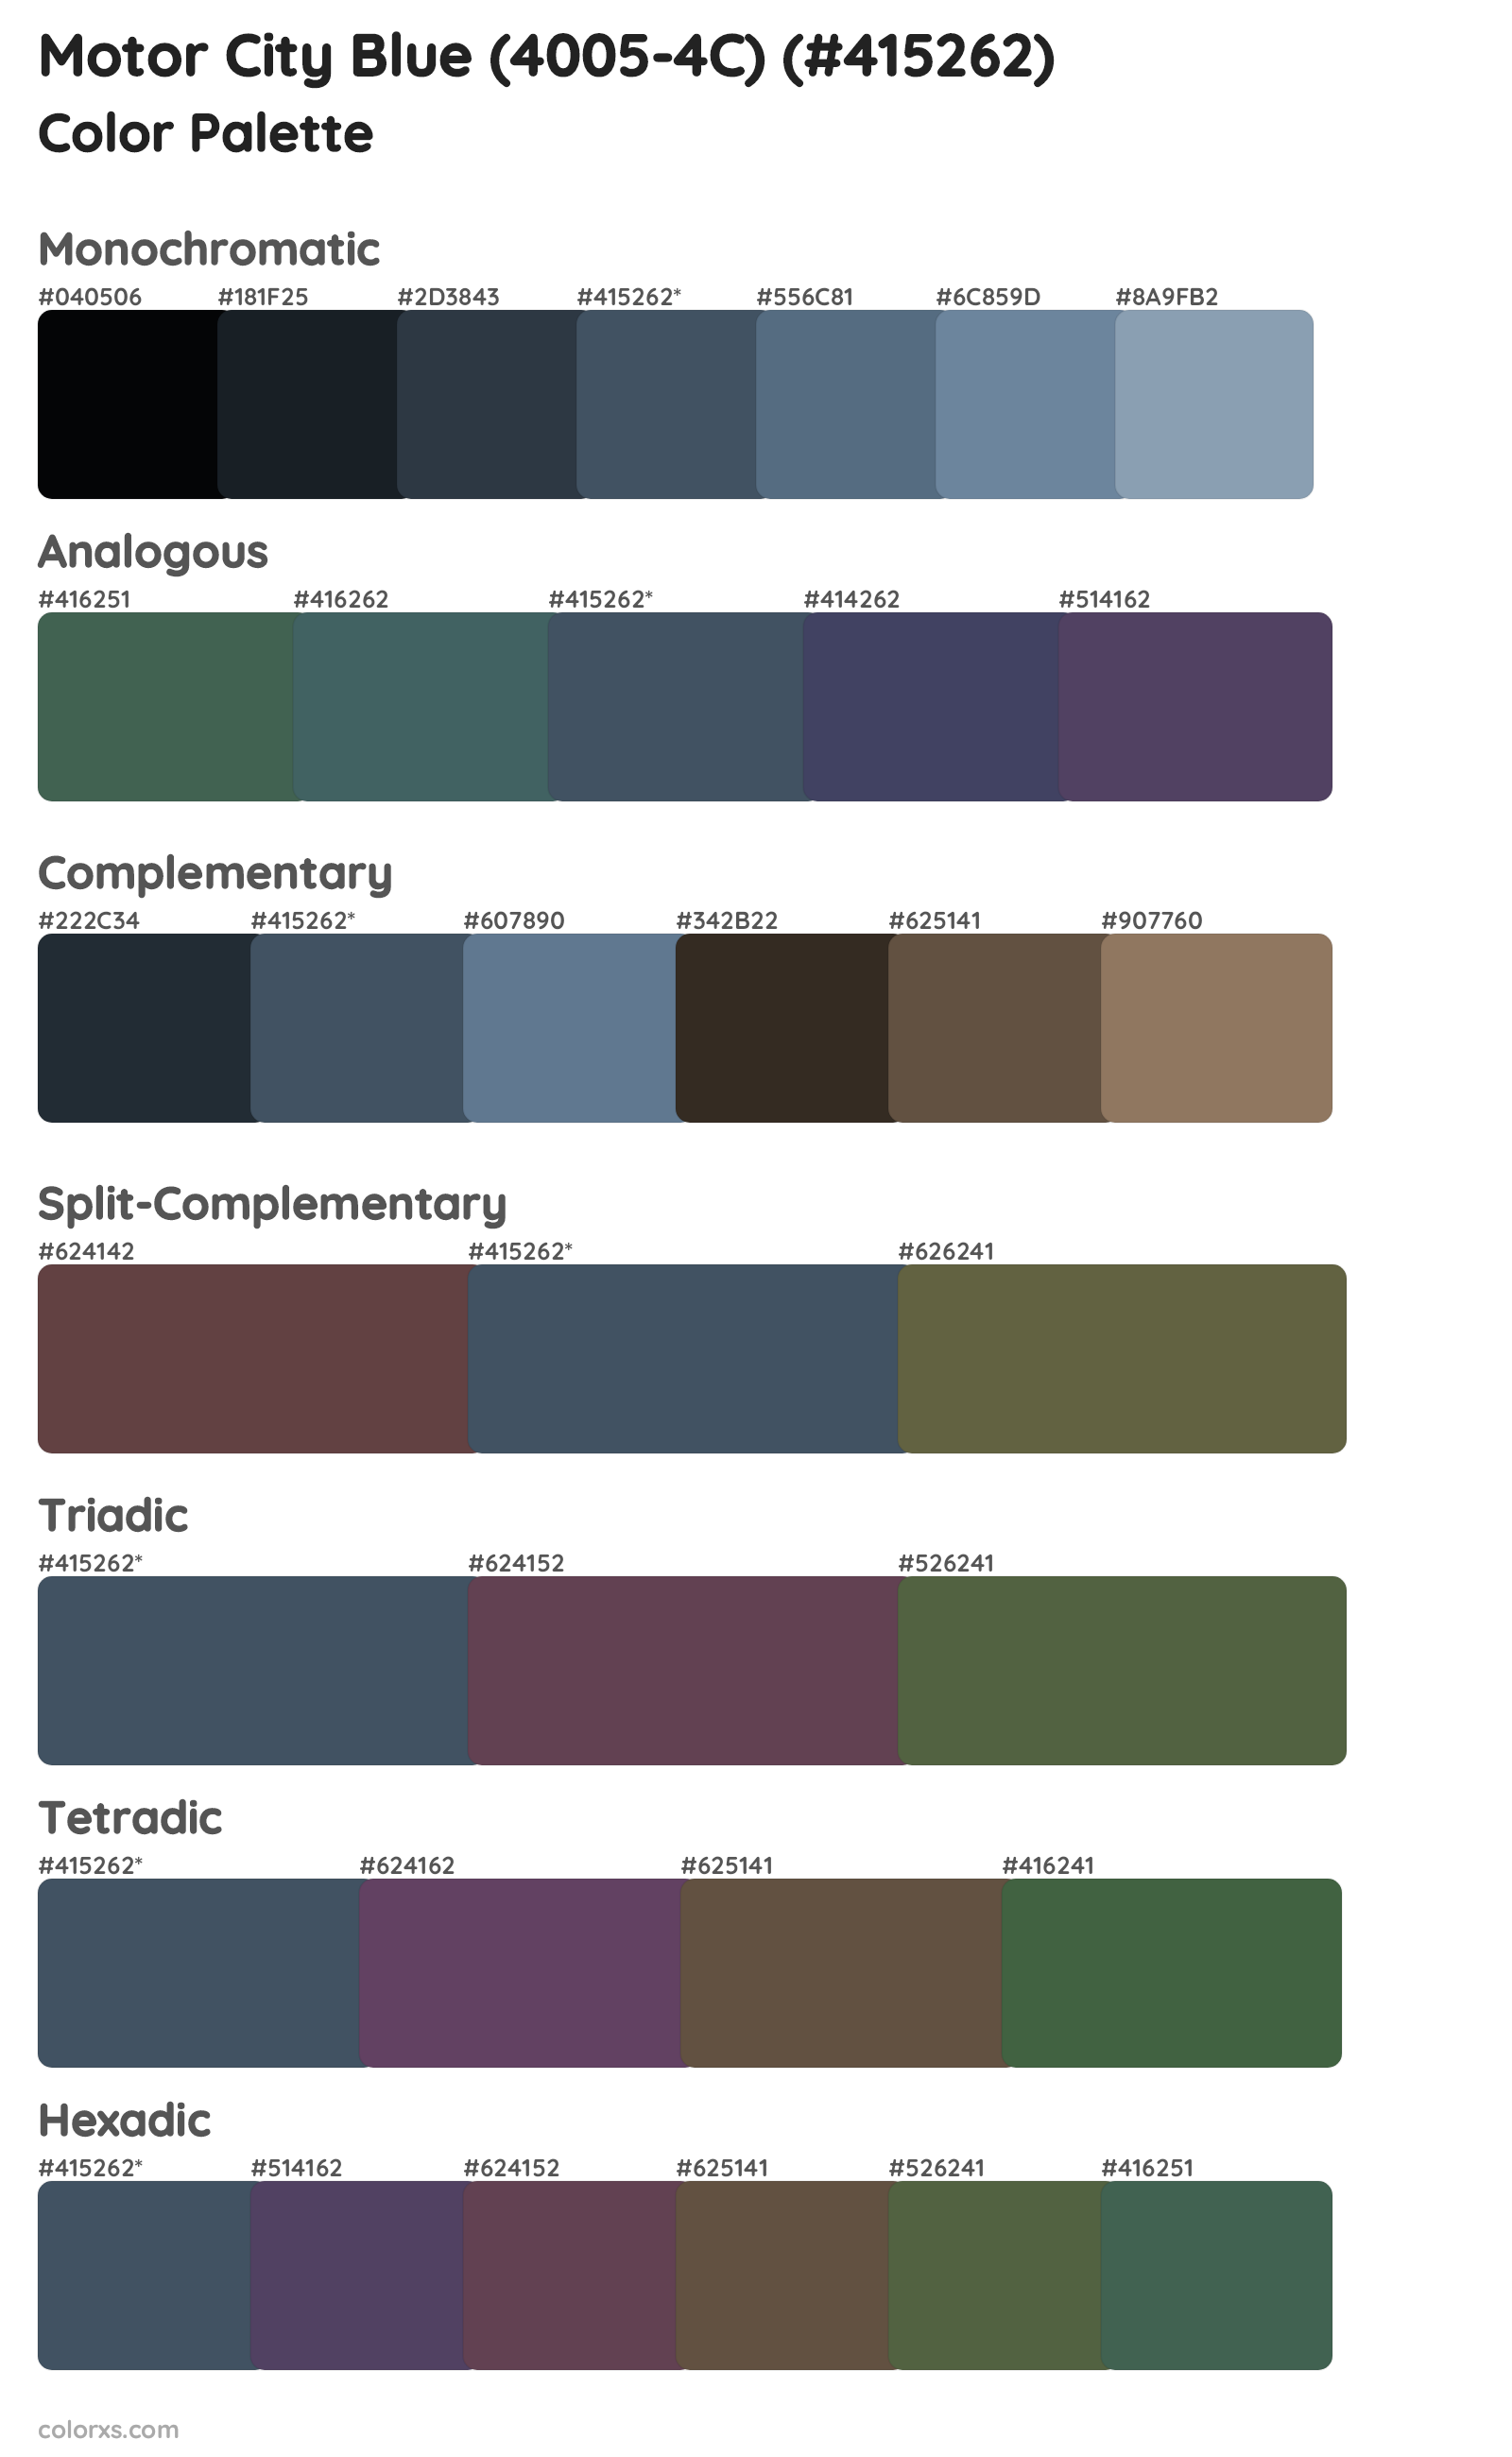 Motor City Blue (4005-4C) Color Scheme Palettes